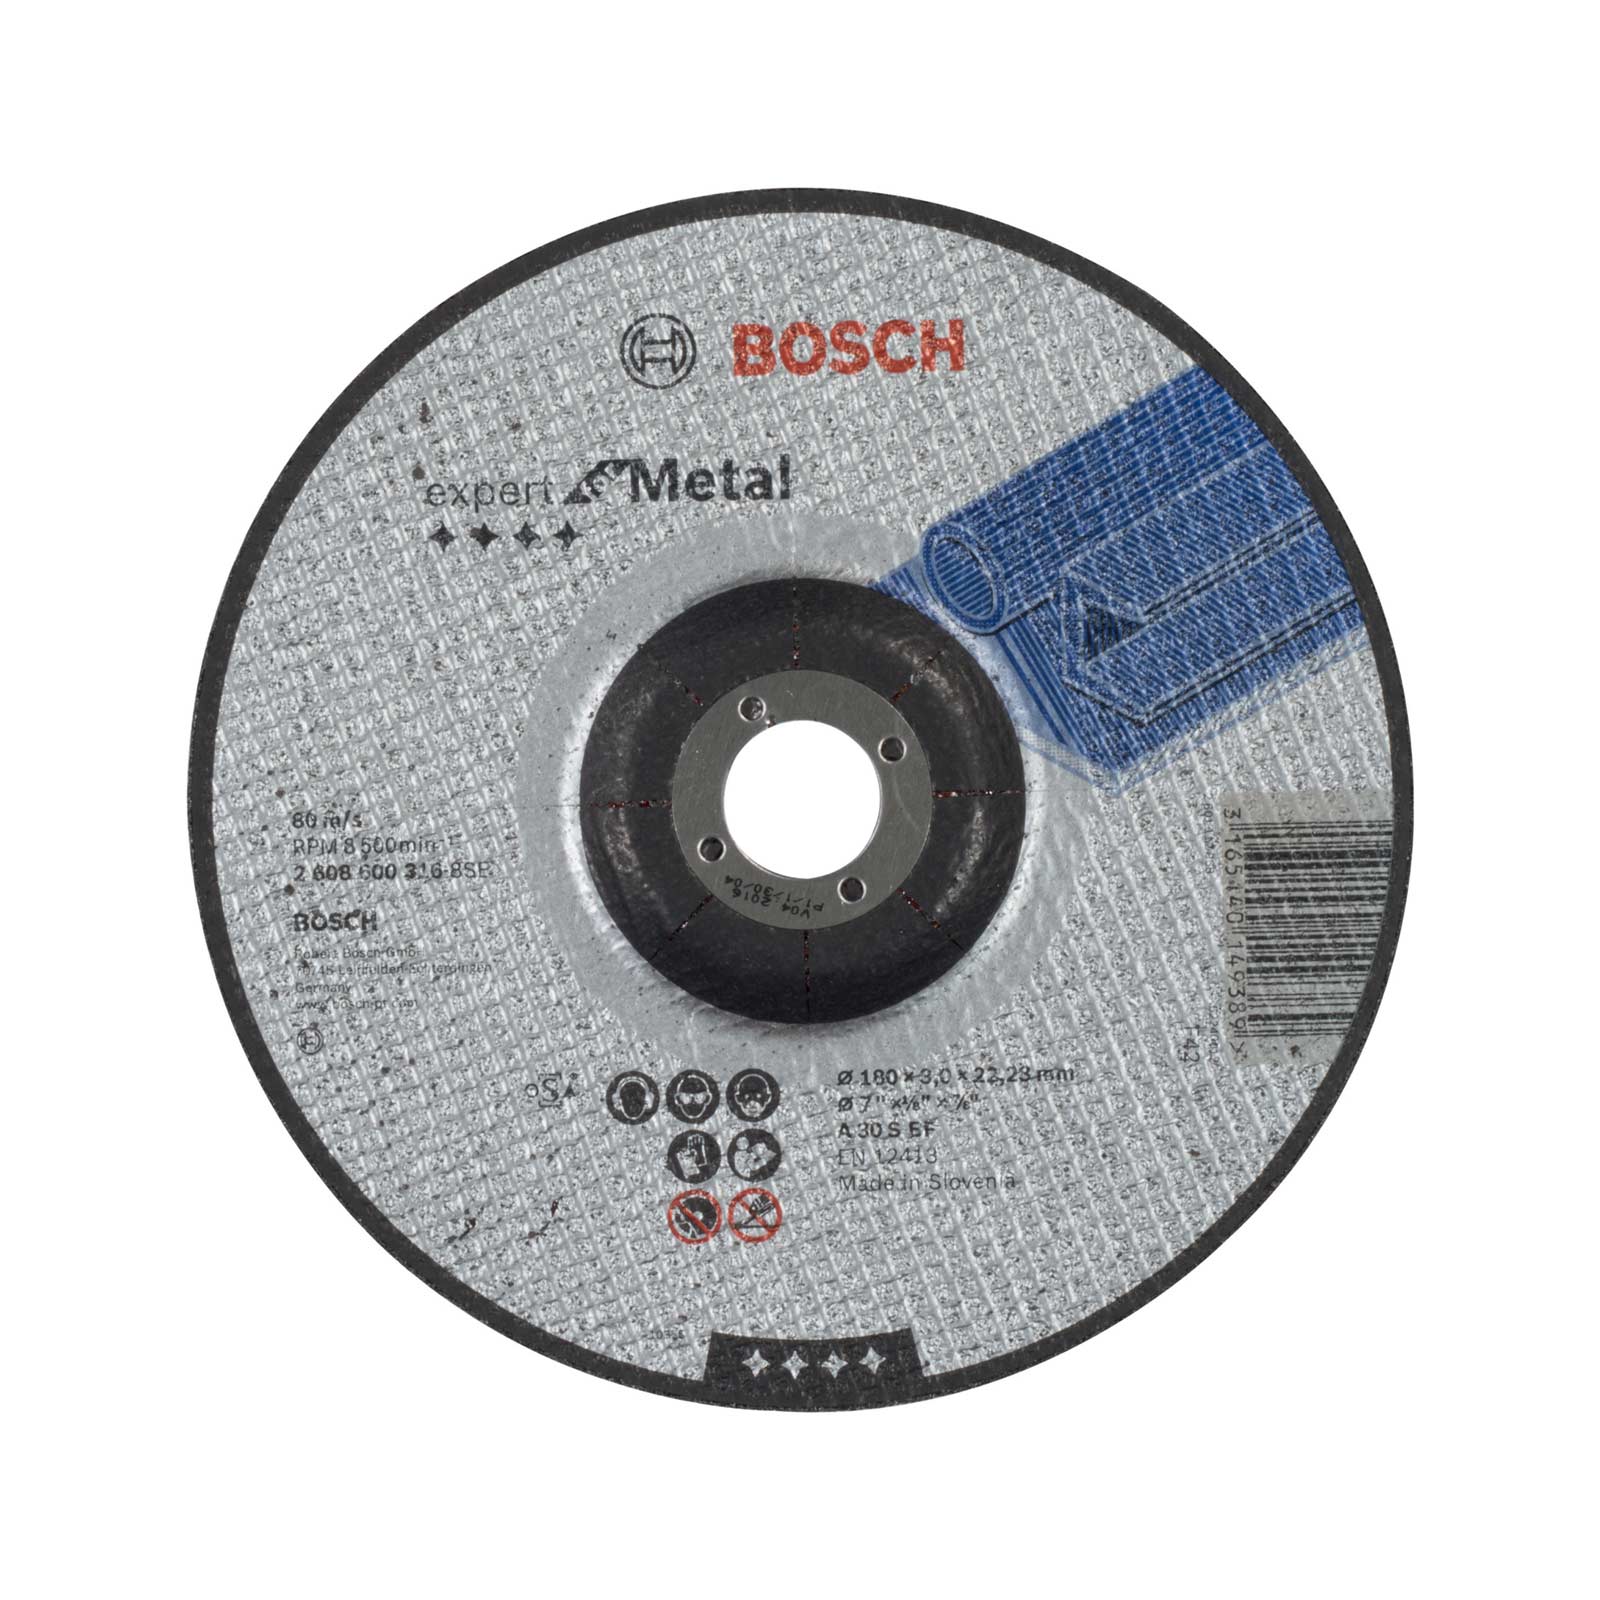 BOSCH řezný kotouč profilovaný Expert for Metal A 30 S BF, 180 x 3,0 mm 2608600316